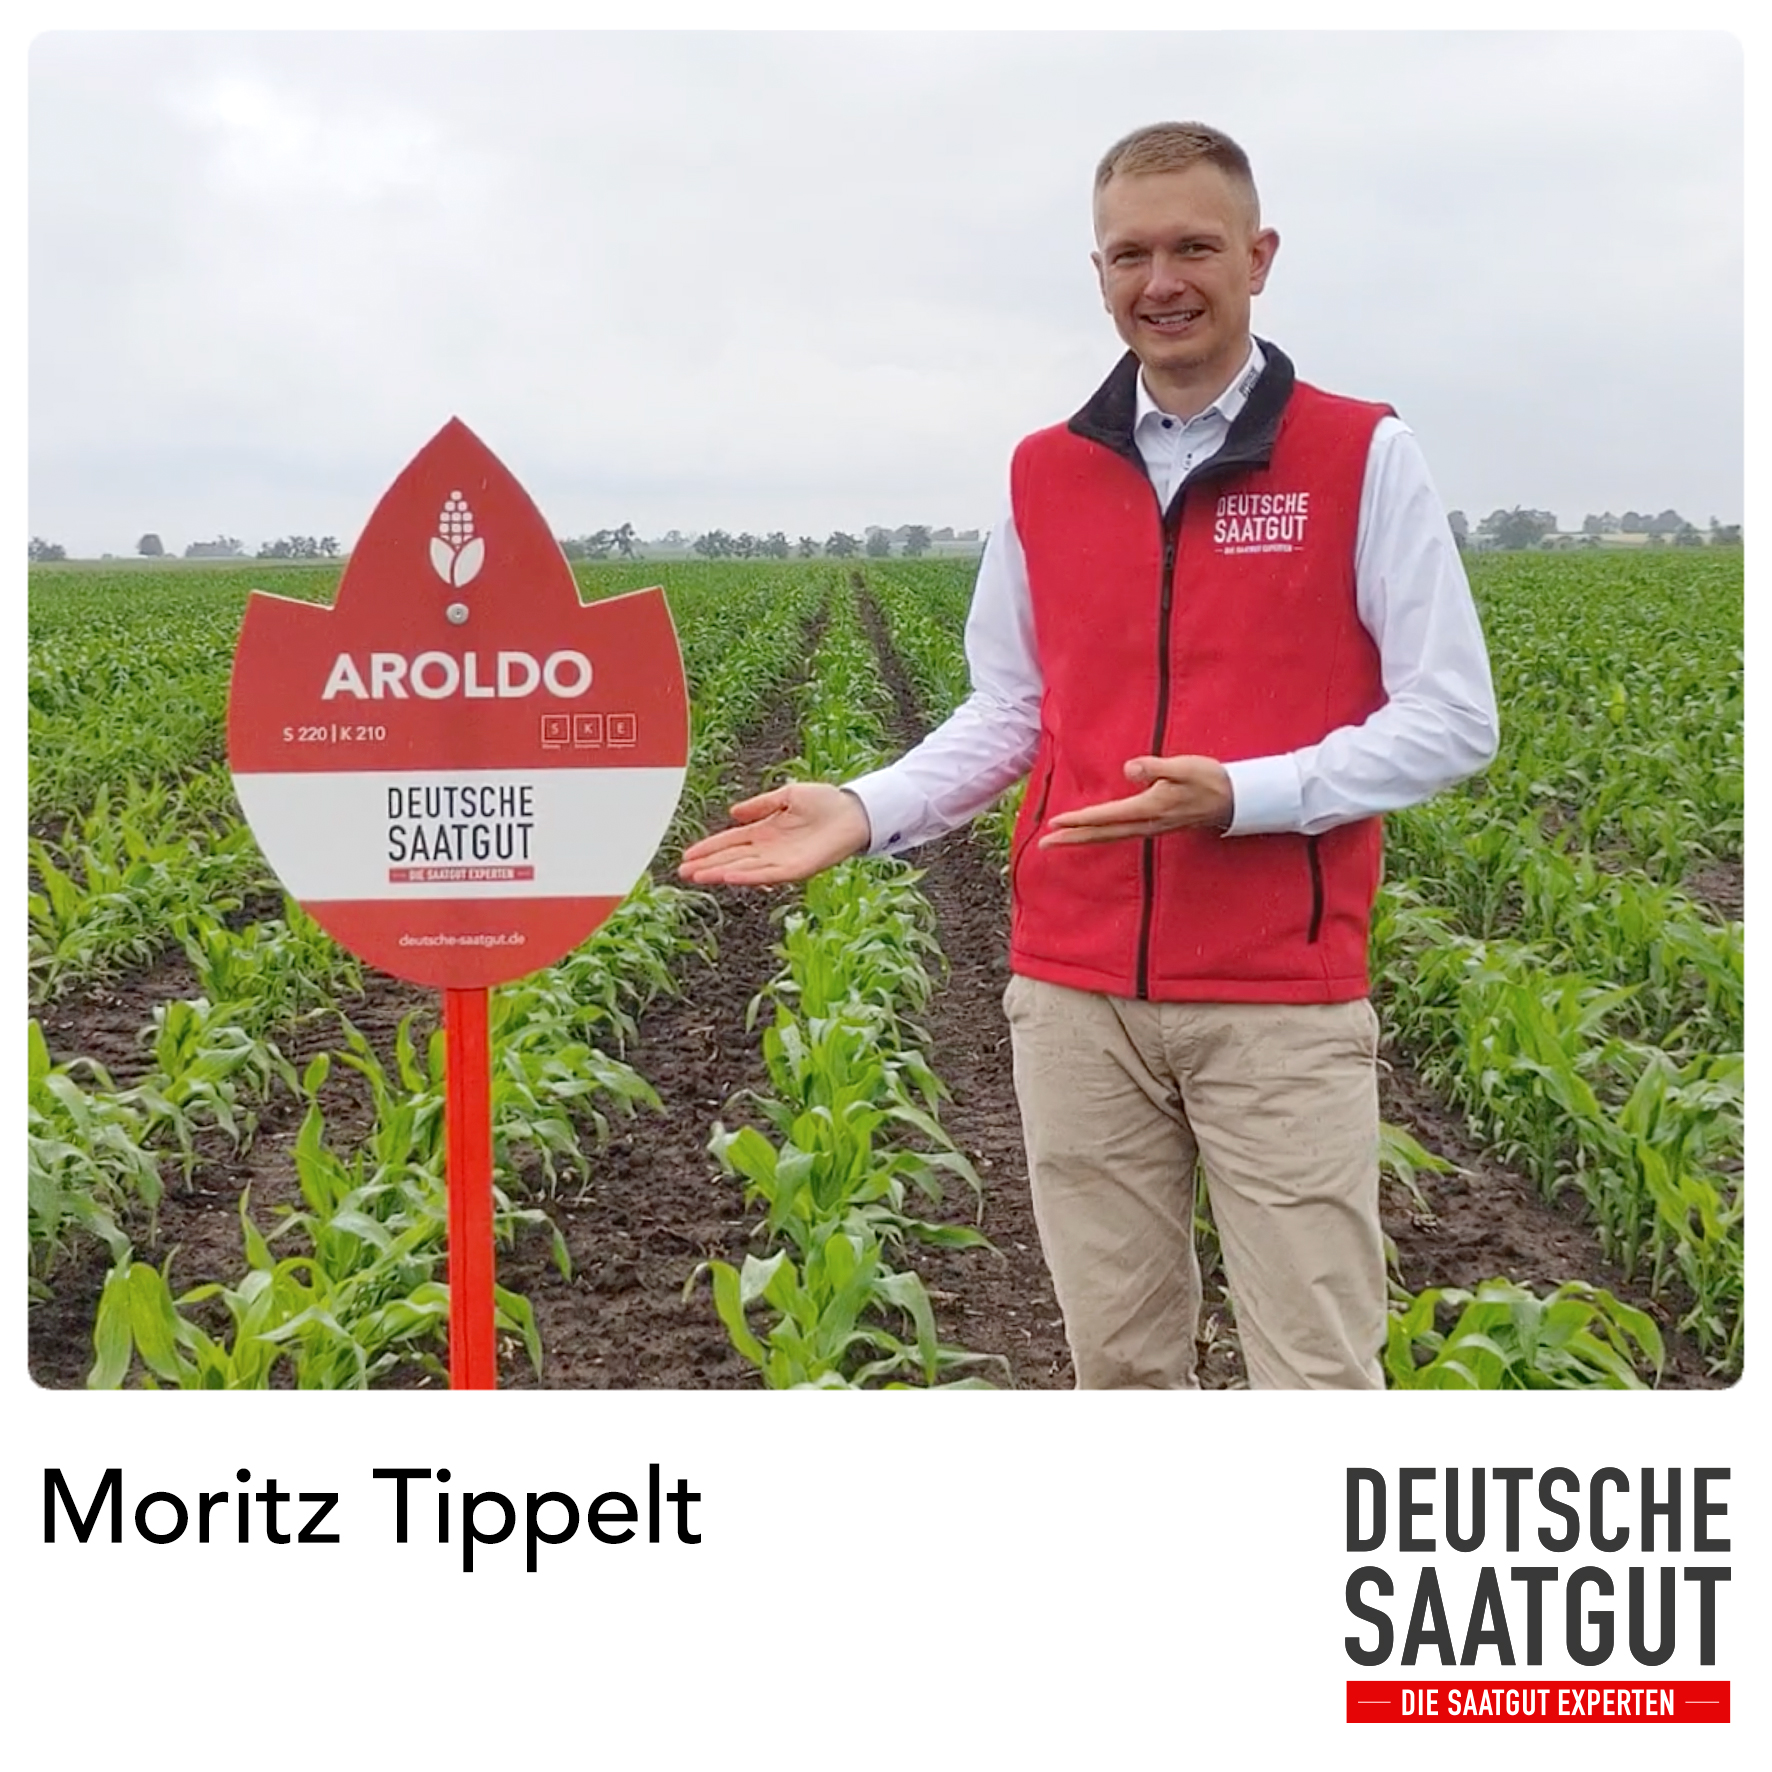 Moritz Tippelt – Sortenvorstellung AROLDO